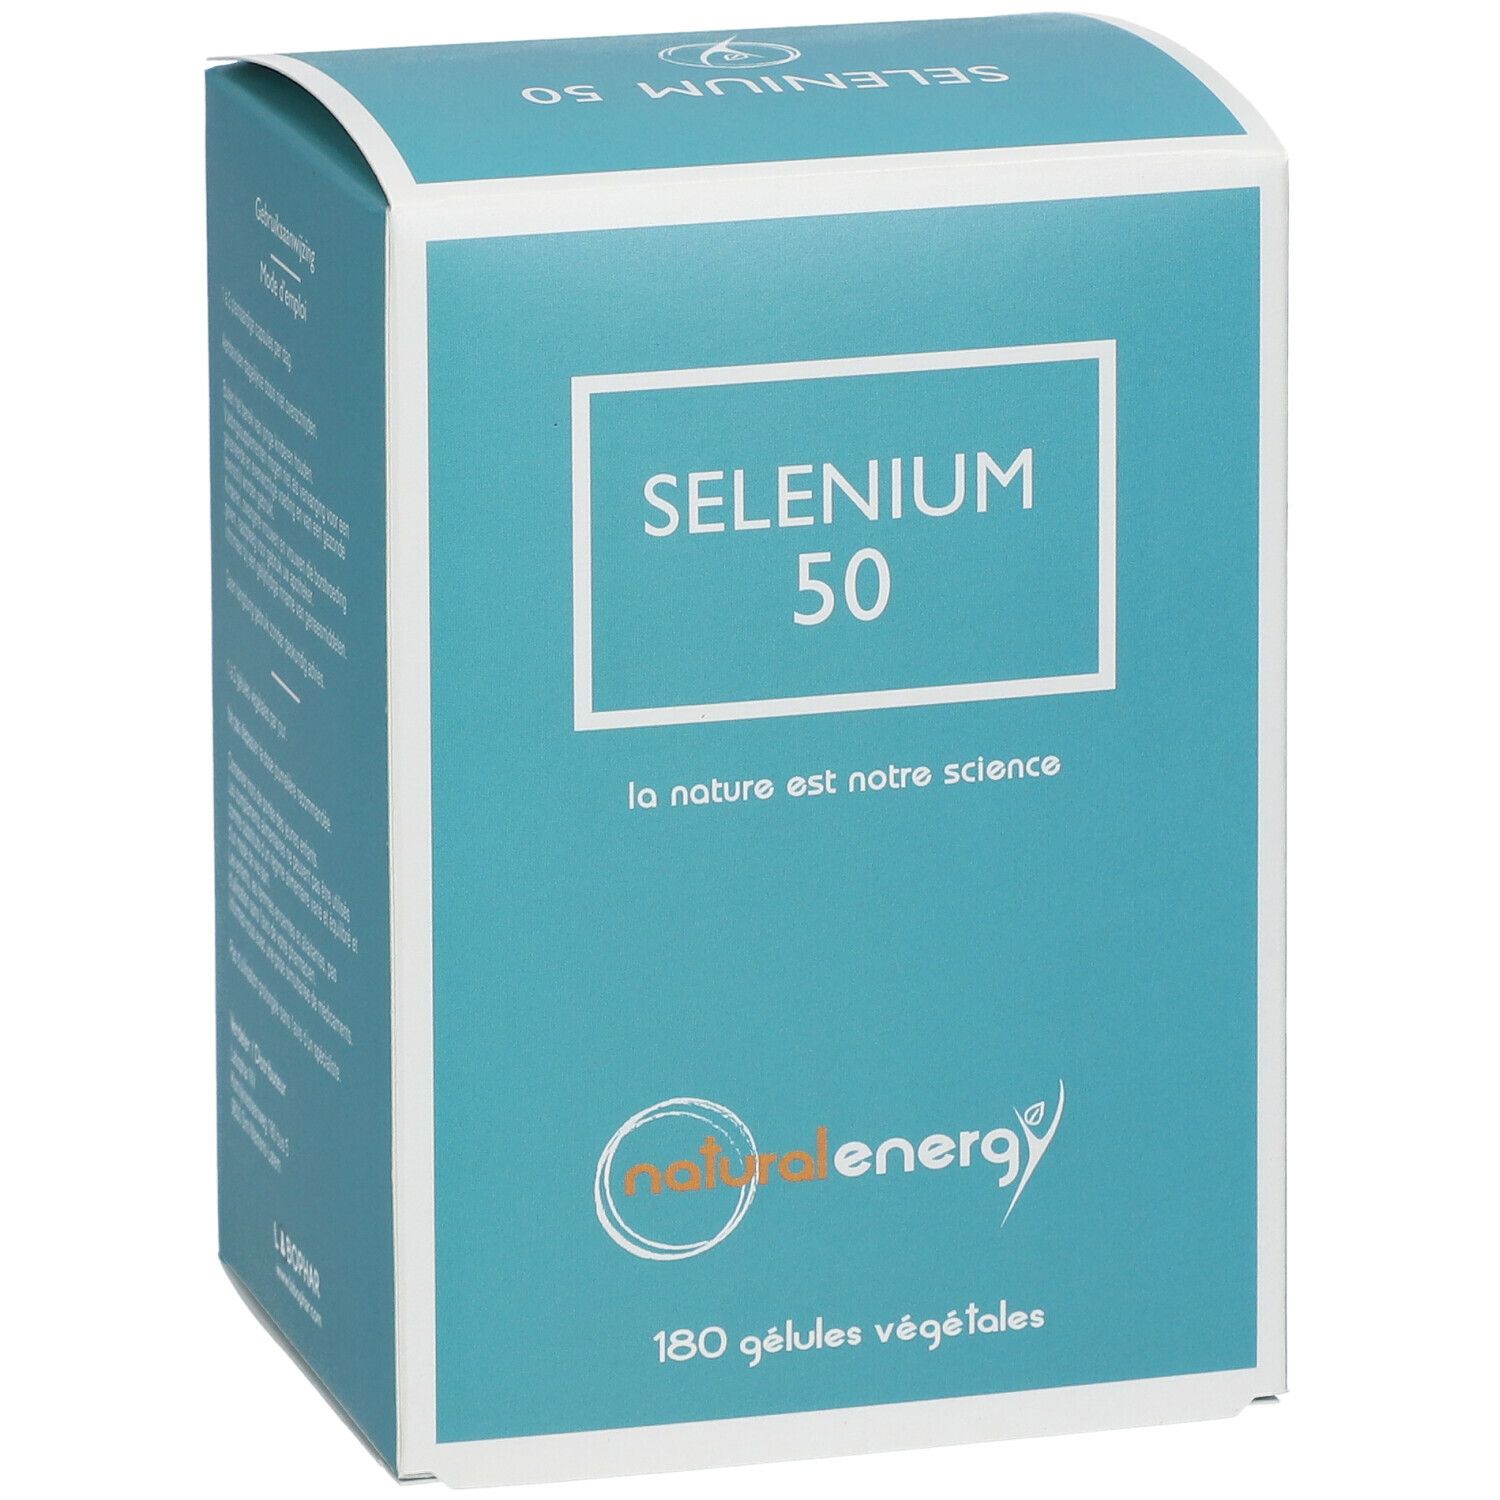 Natural Energy Selenium 50